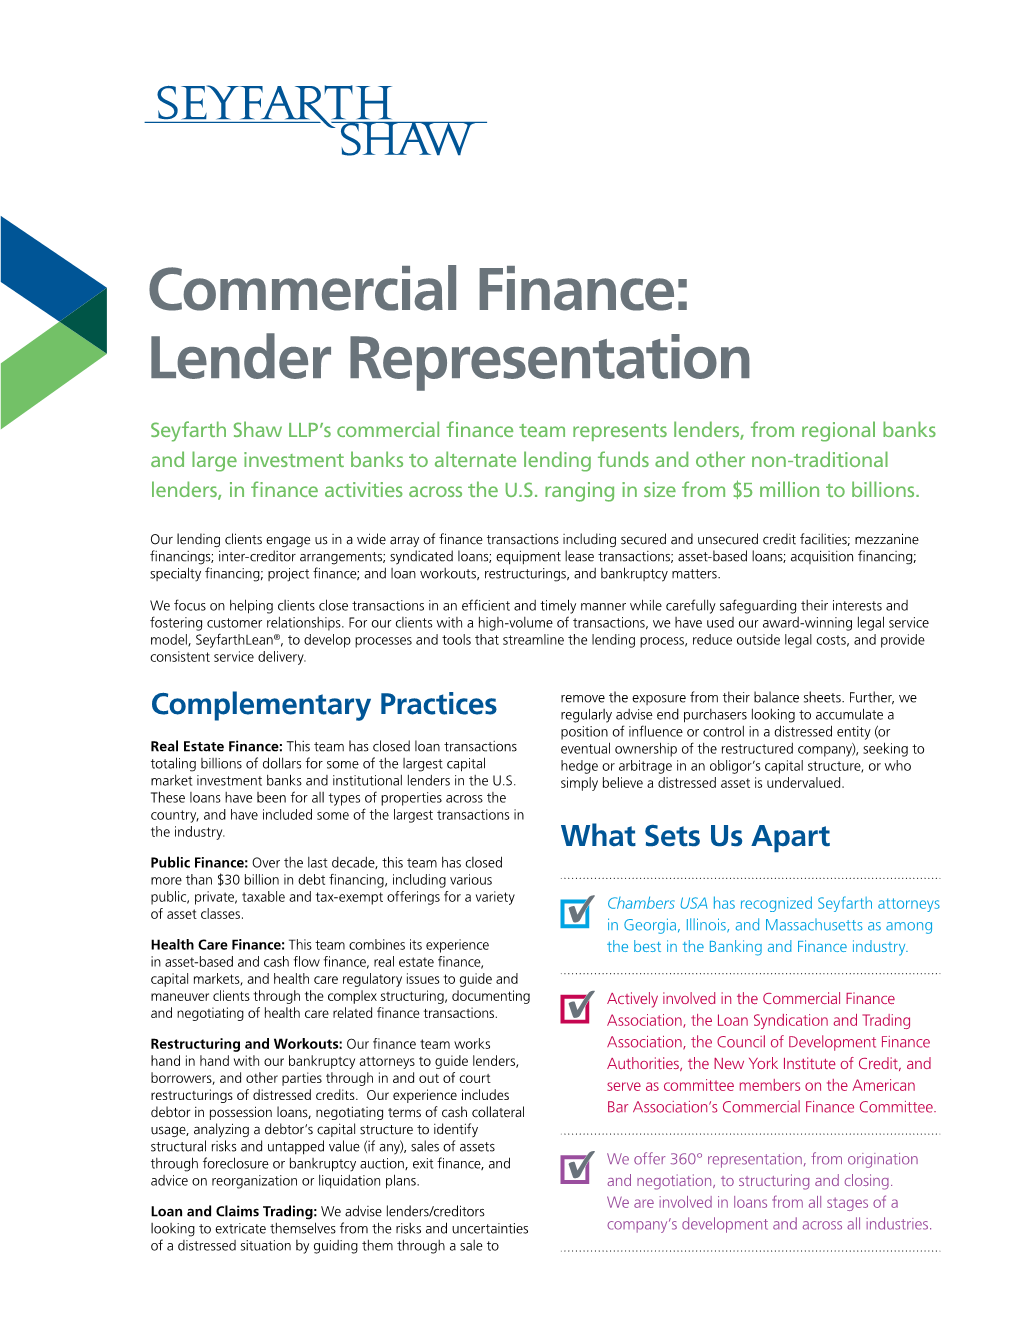 Commercial Finance: Lender Representation